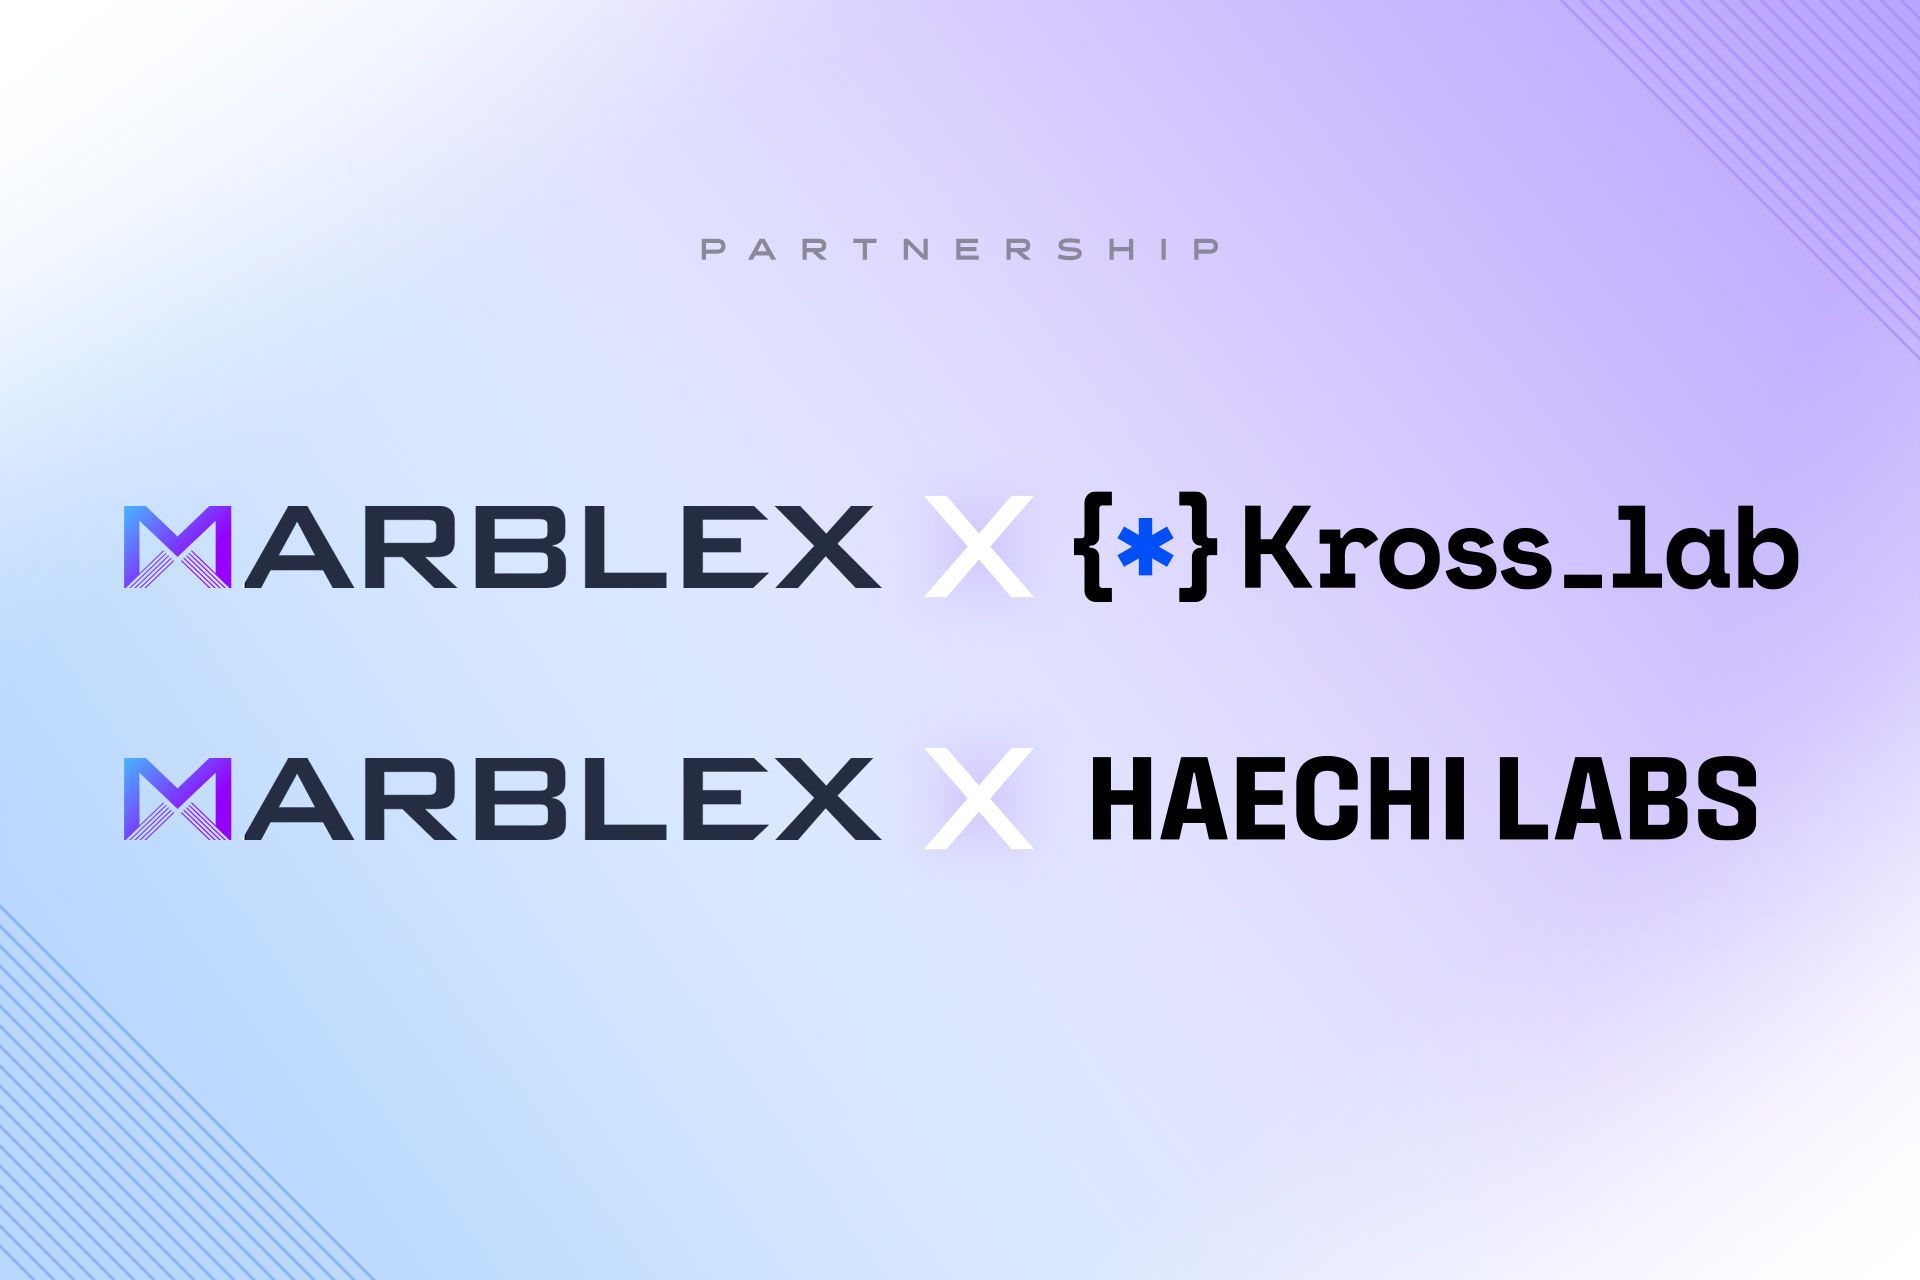 網石專有區塊鏈貨幣「MBX」推出一系列合作夥伴關係